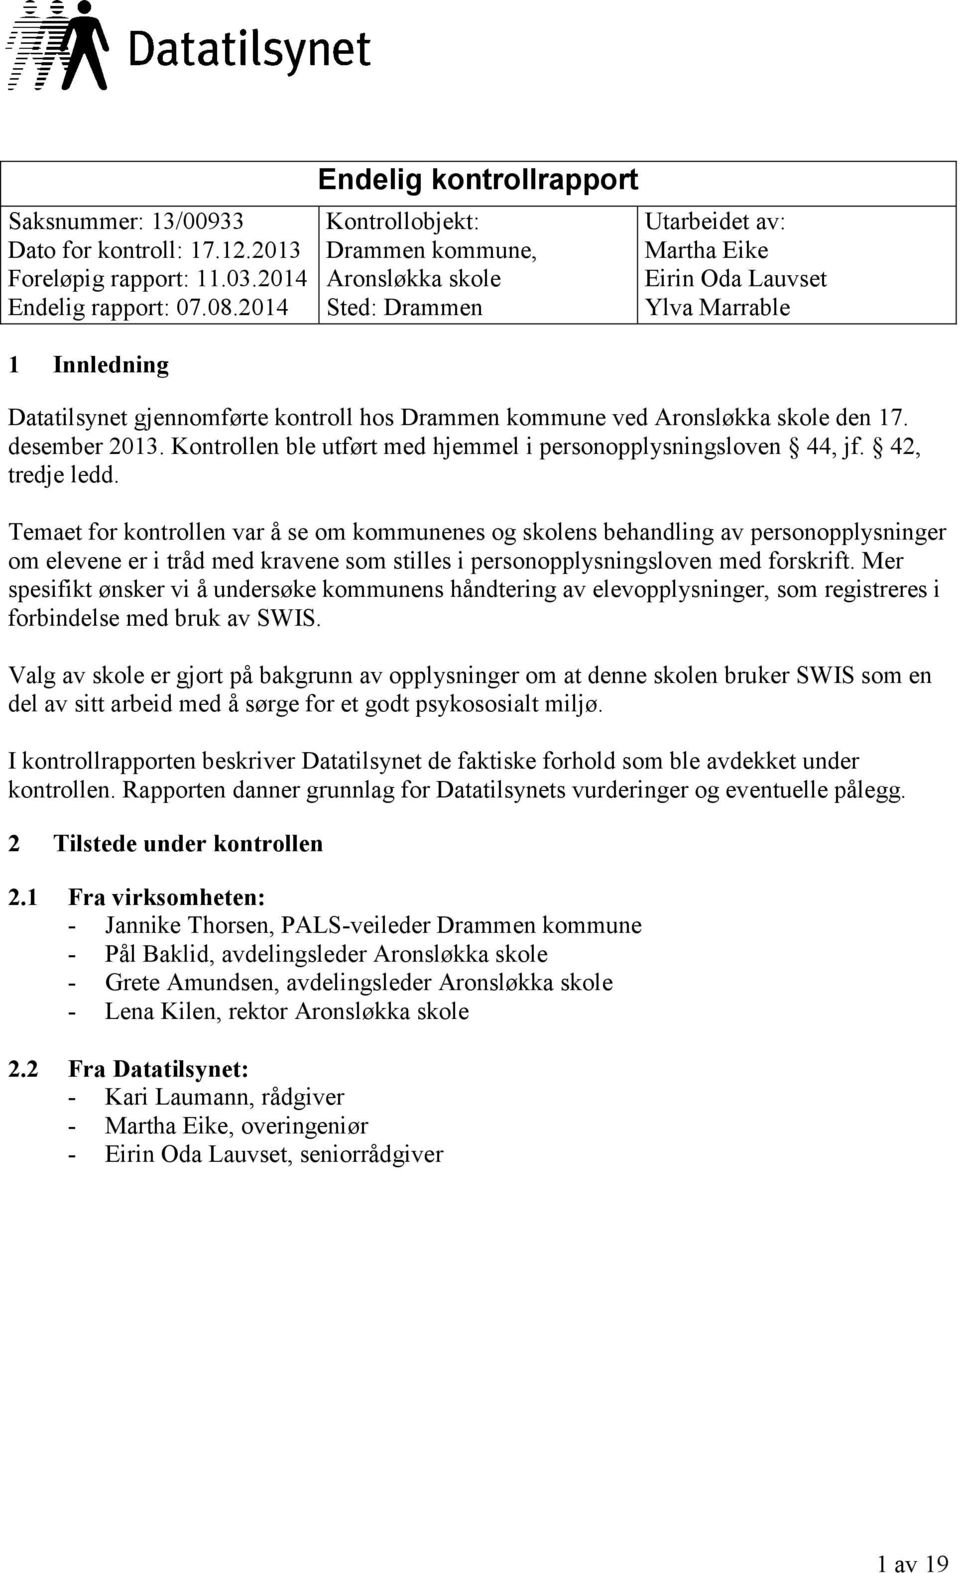 hos Drammen kommune ved Aronsløkka skole den 17. desember 2013. Kontrollen ble utført med hjemmel i personopplysningsloven 44, jf. 42, tredje ledd.